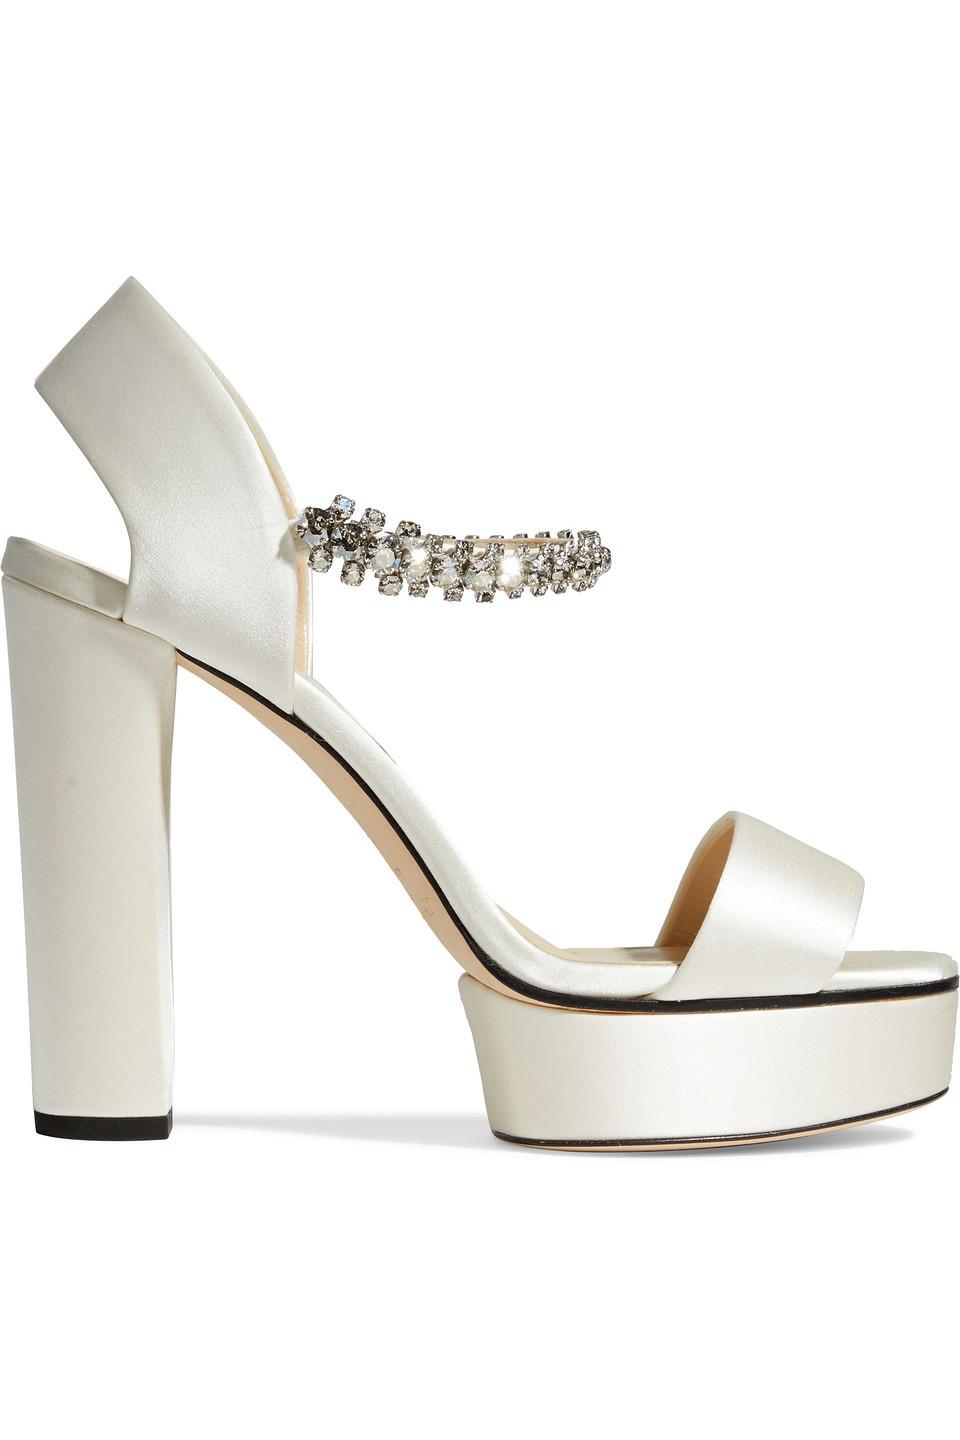 Jimmy Choo Santina 125 Crystal-embellished Satin Platform Sandals in White